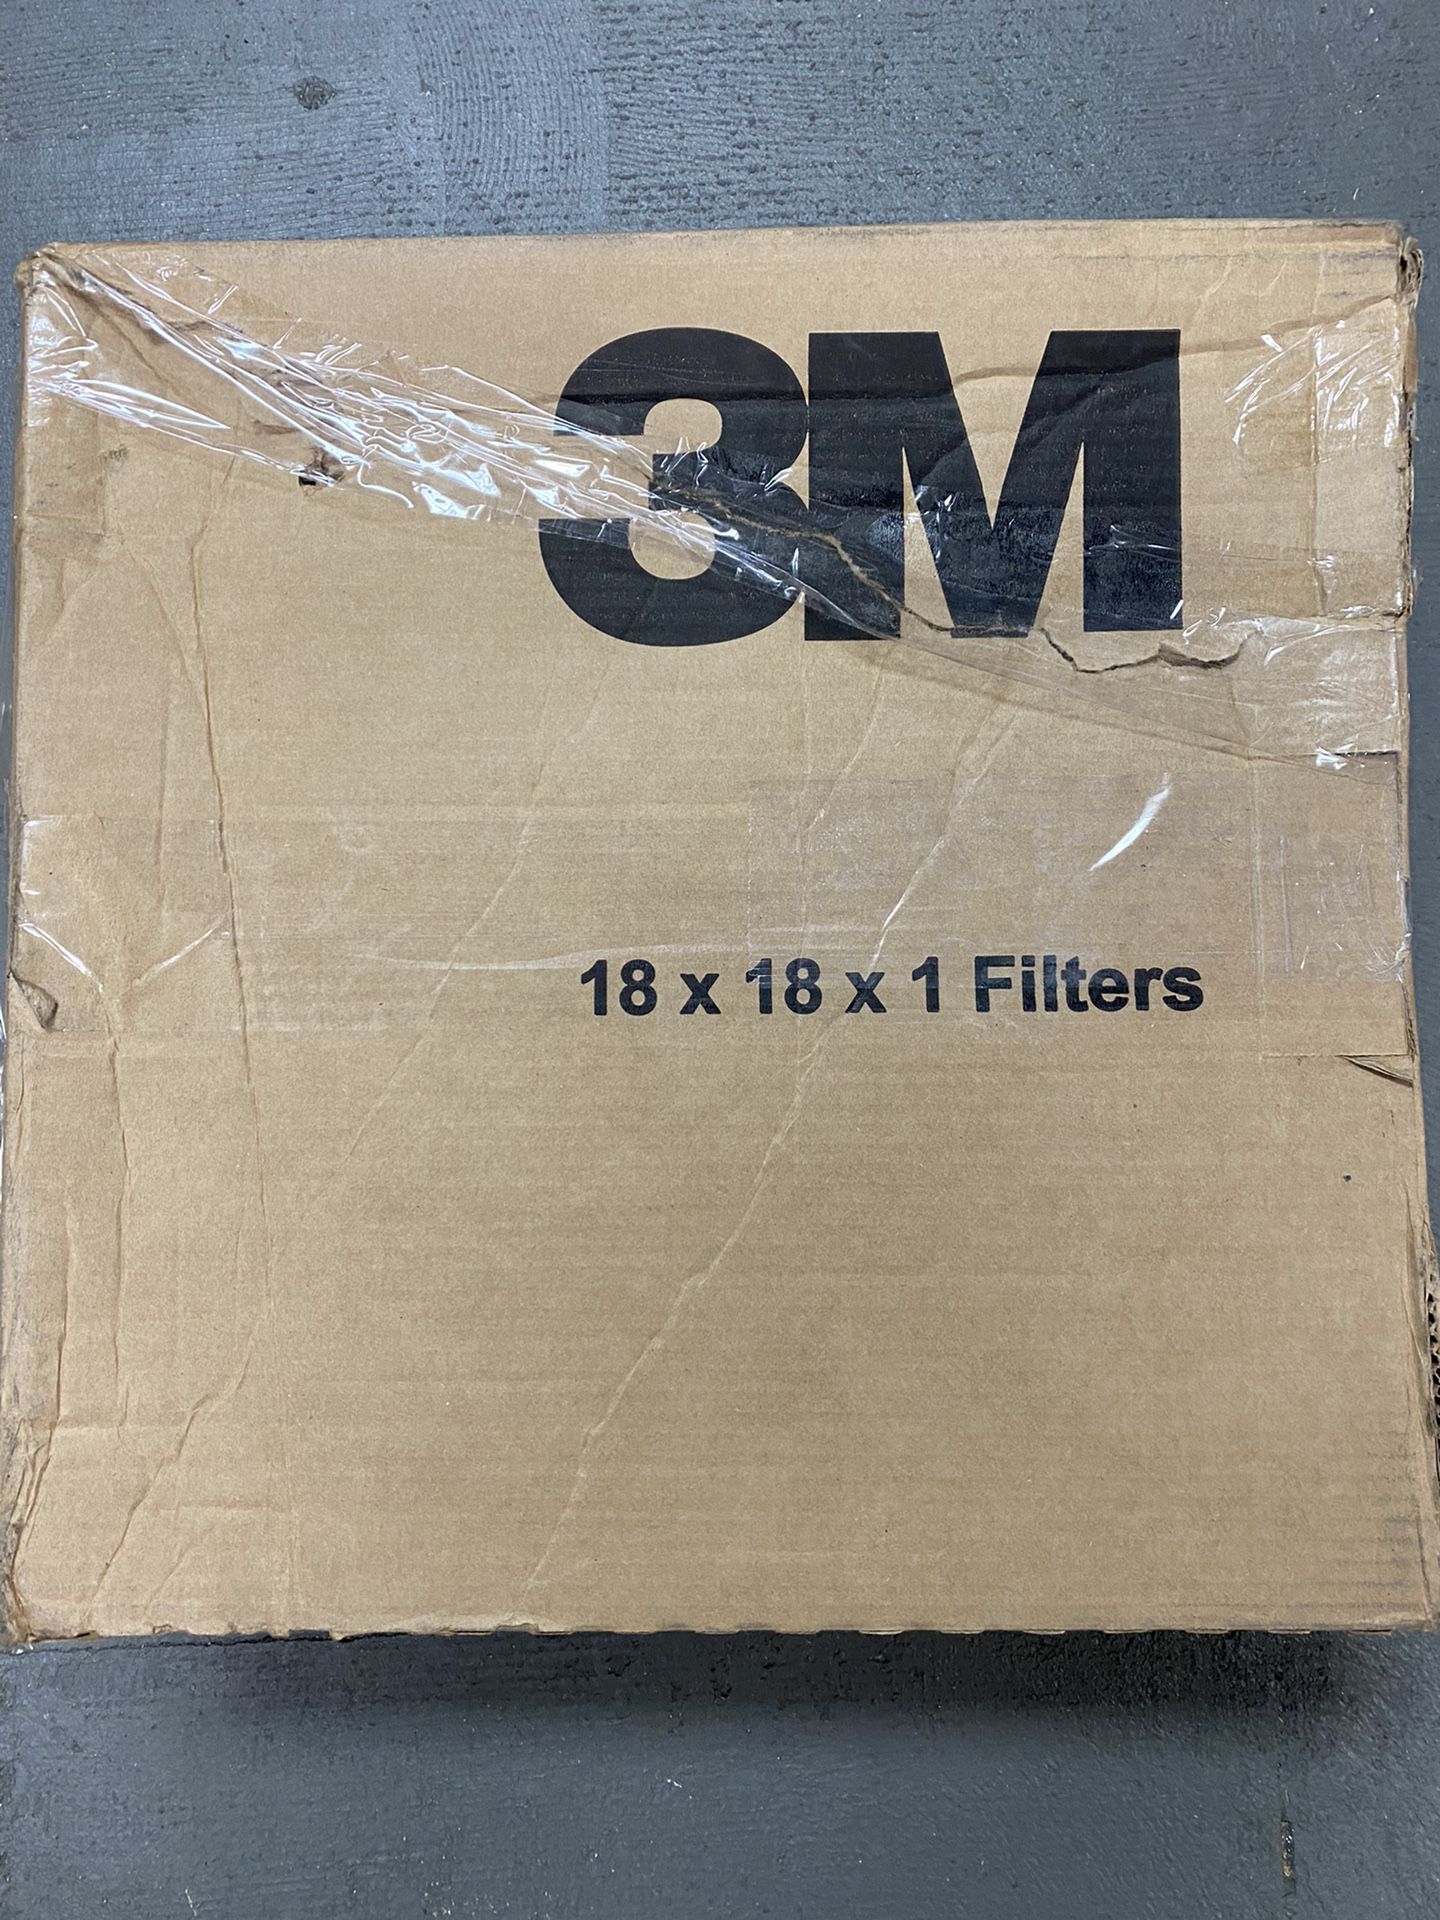 3M 6 pack Filtrete 18x18x1